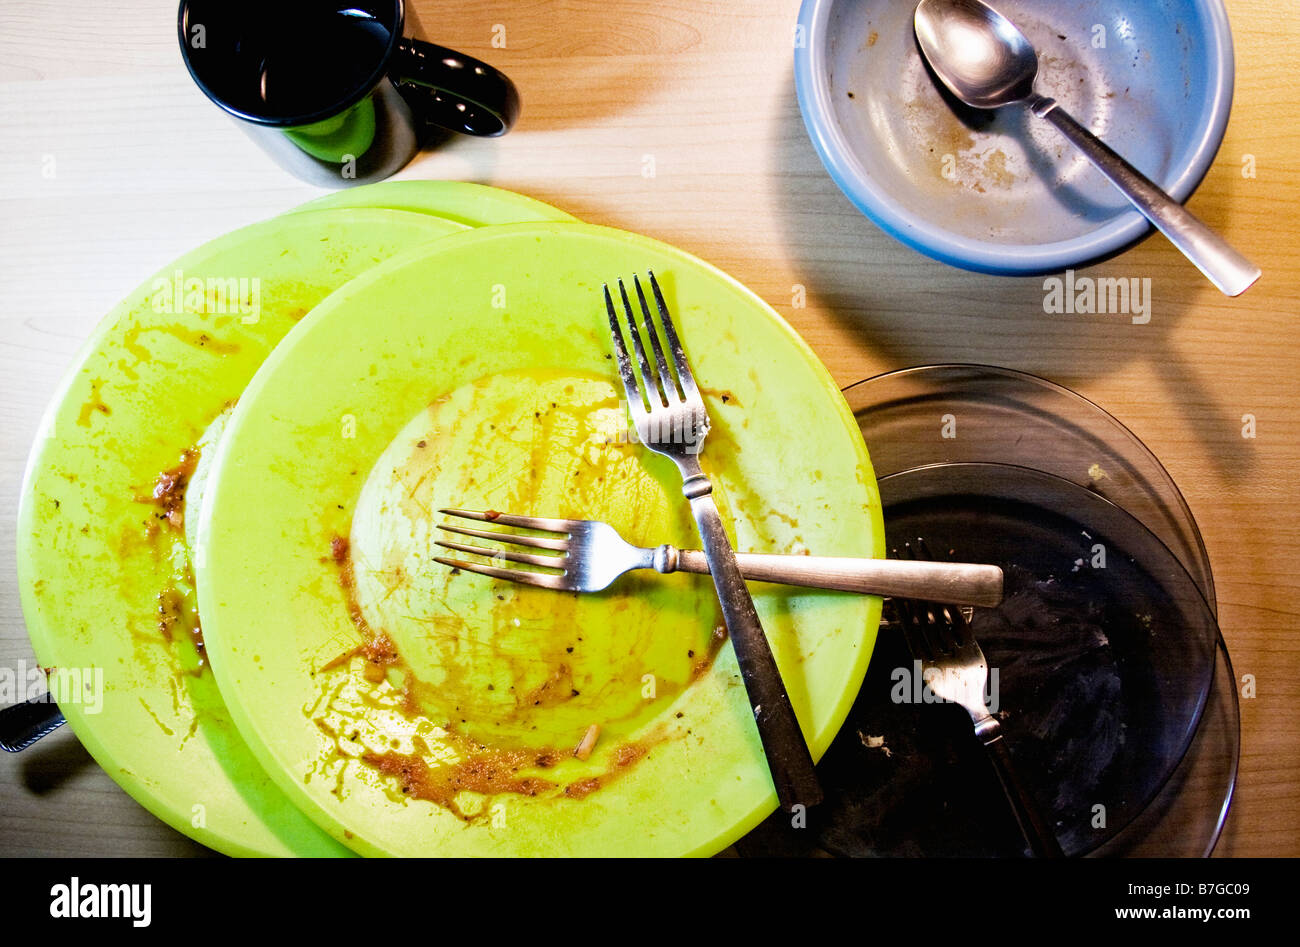 Terminato il pasto con i piatti sporchi. Foto Stock